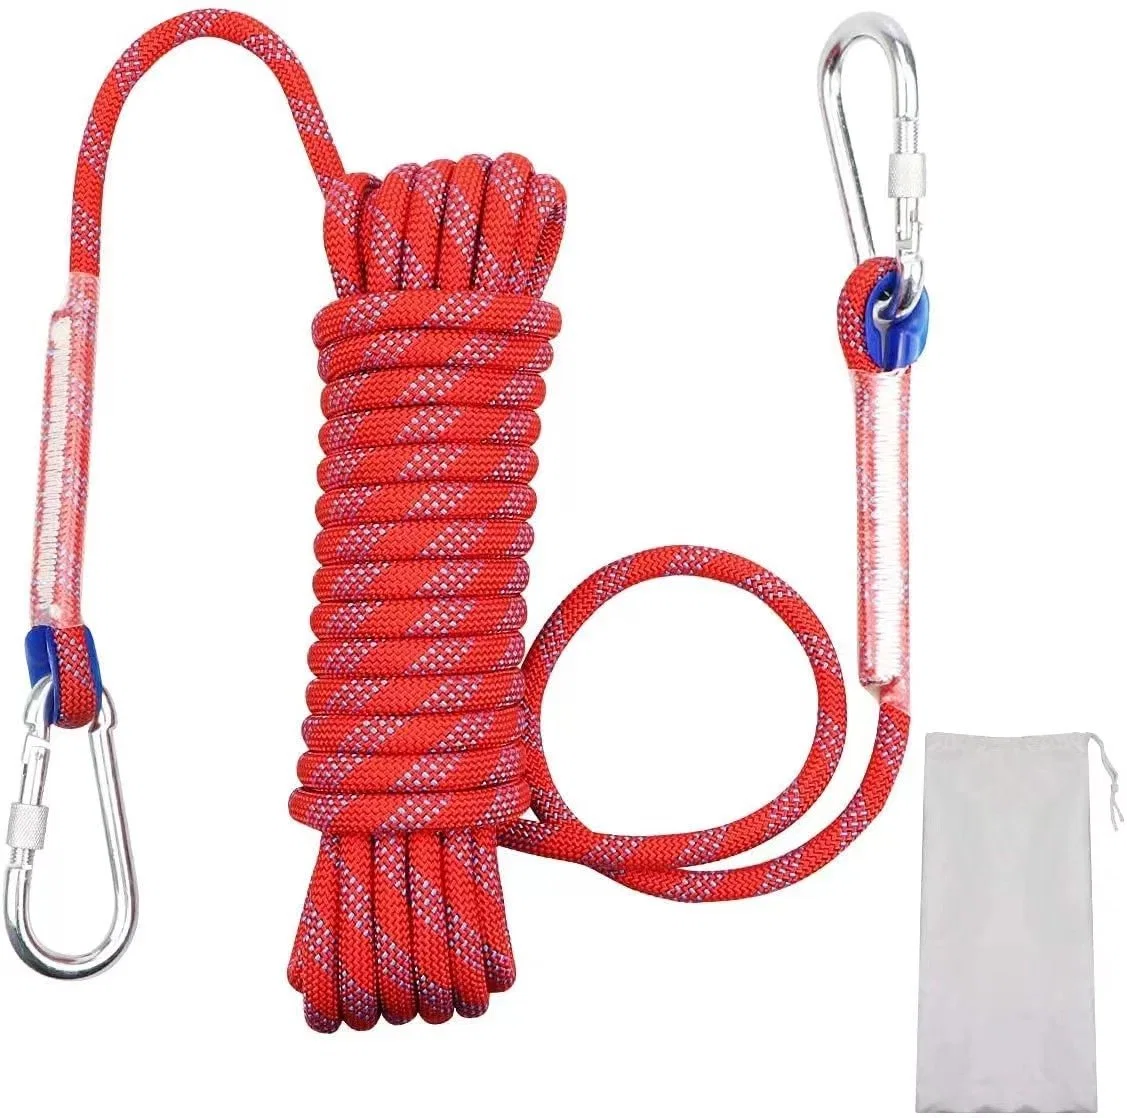 Climbing Rope Climbing Rope Safety Rope Safety Rope